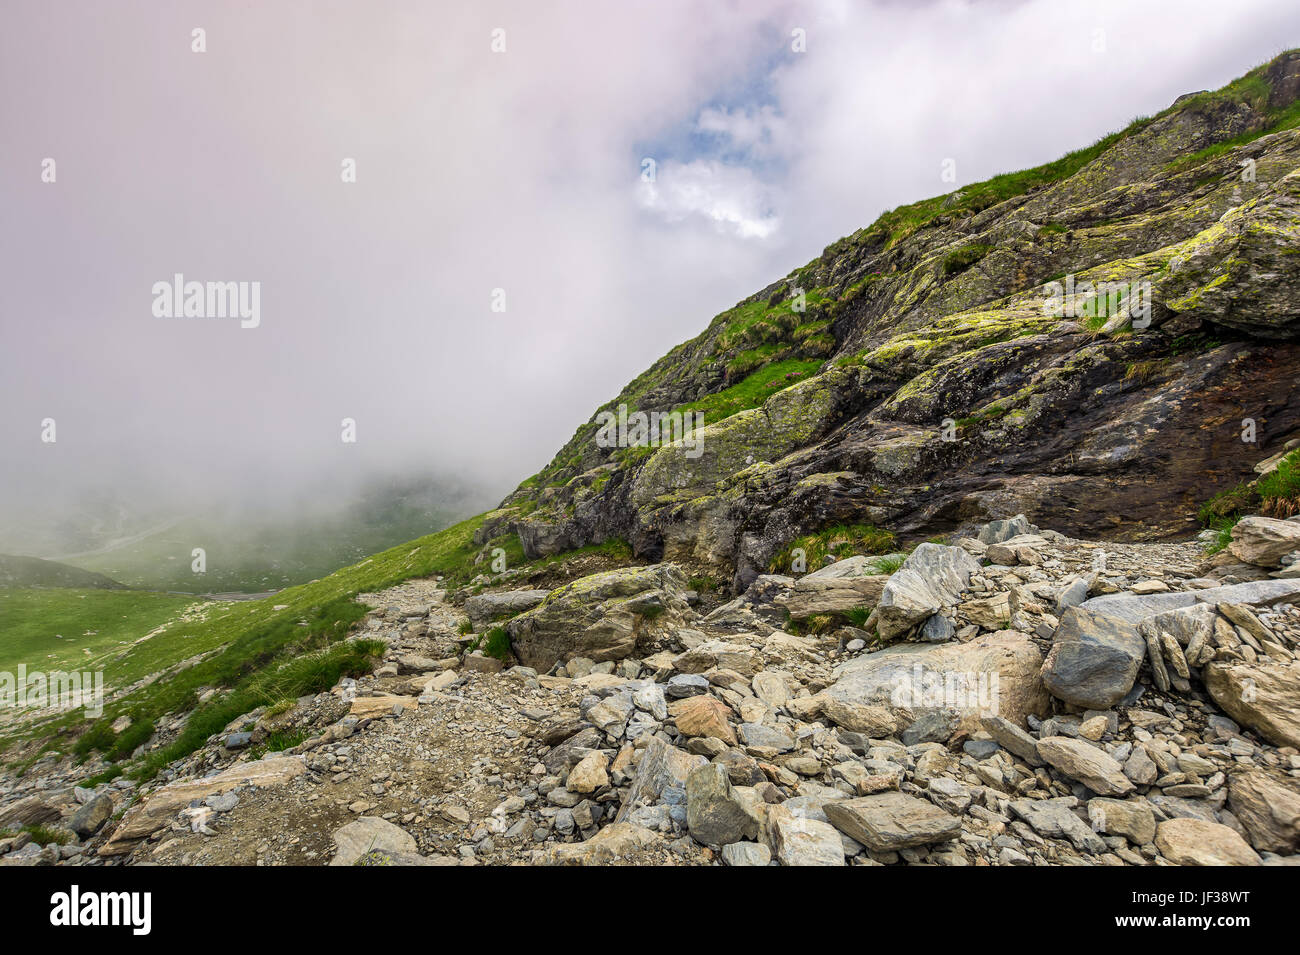 Bordo del ripido pendio sulla collina rocciosa nella nebbia meteo. lo scenario spettacolare in montagna Foto Stock